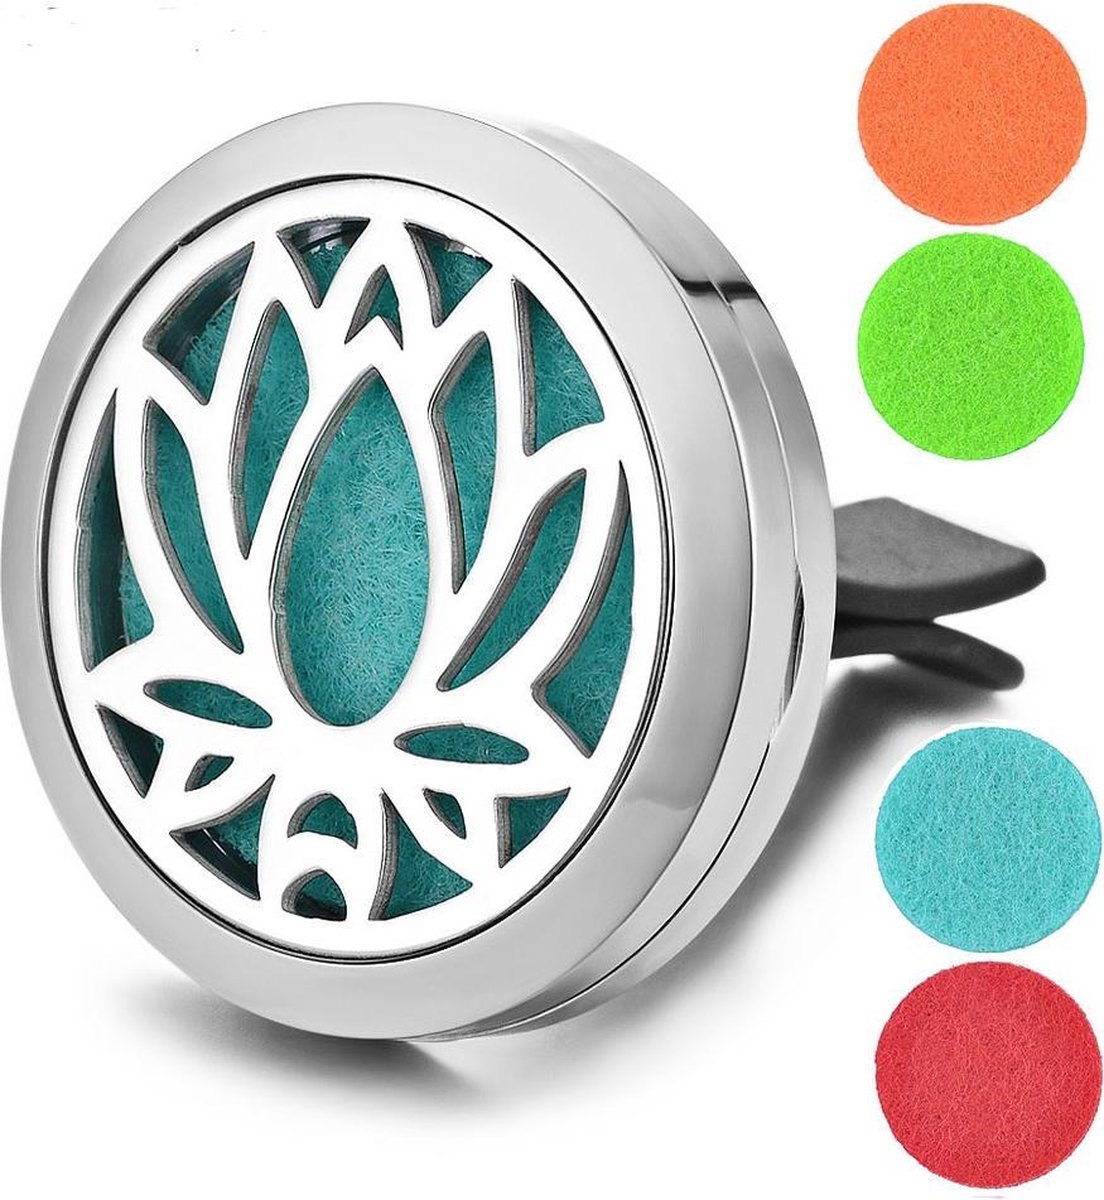 Auto luchtverfrisser met Lotus uitsnede - Aroma therapie diffuser - Geurverspreider